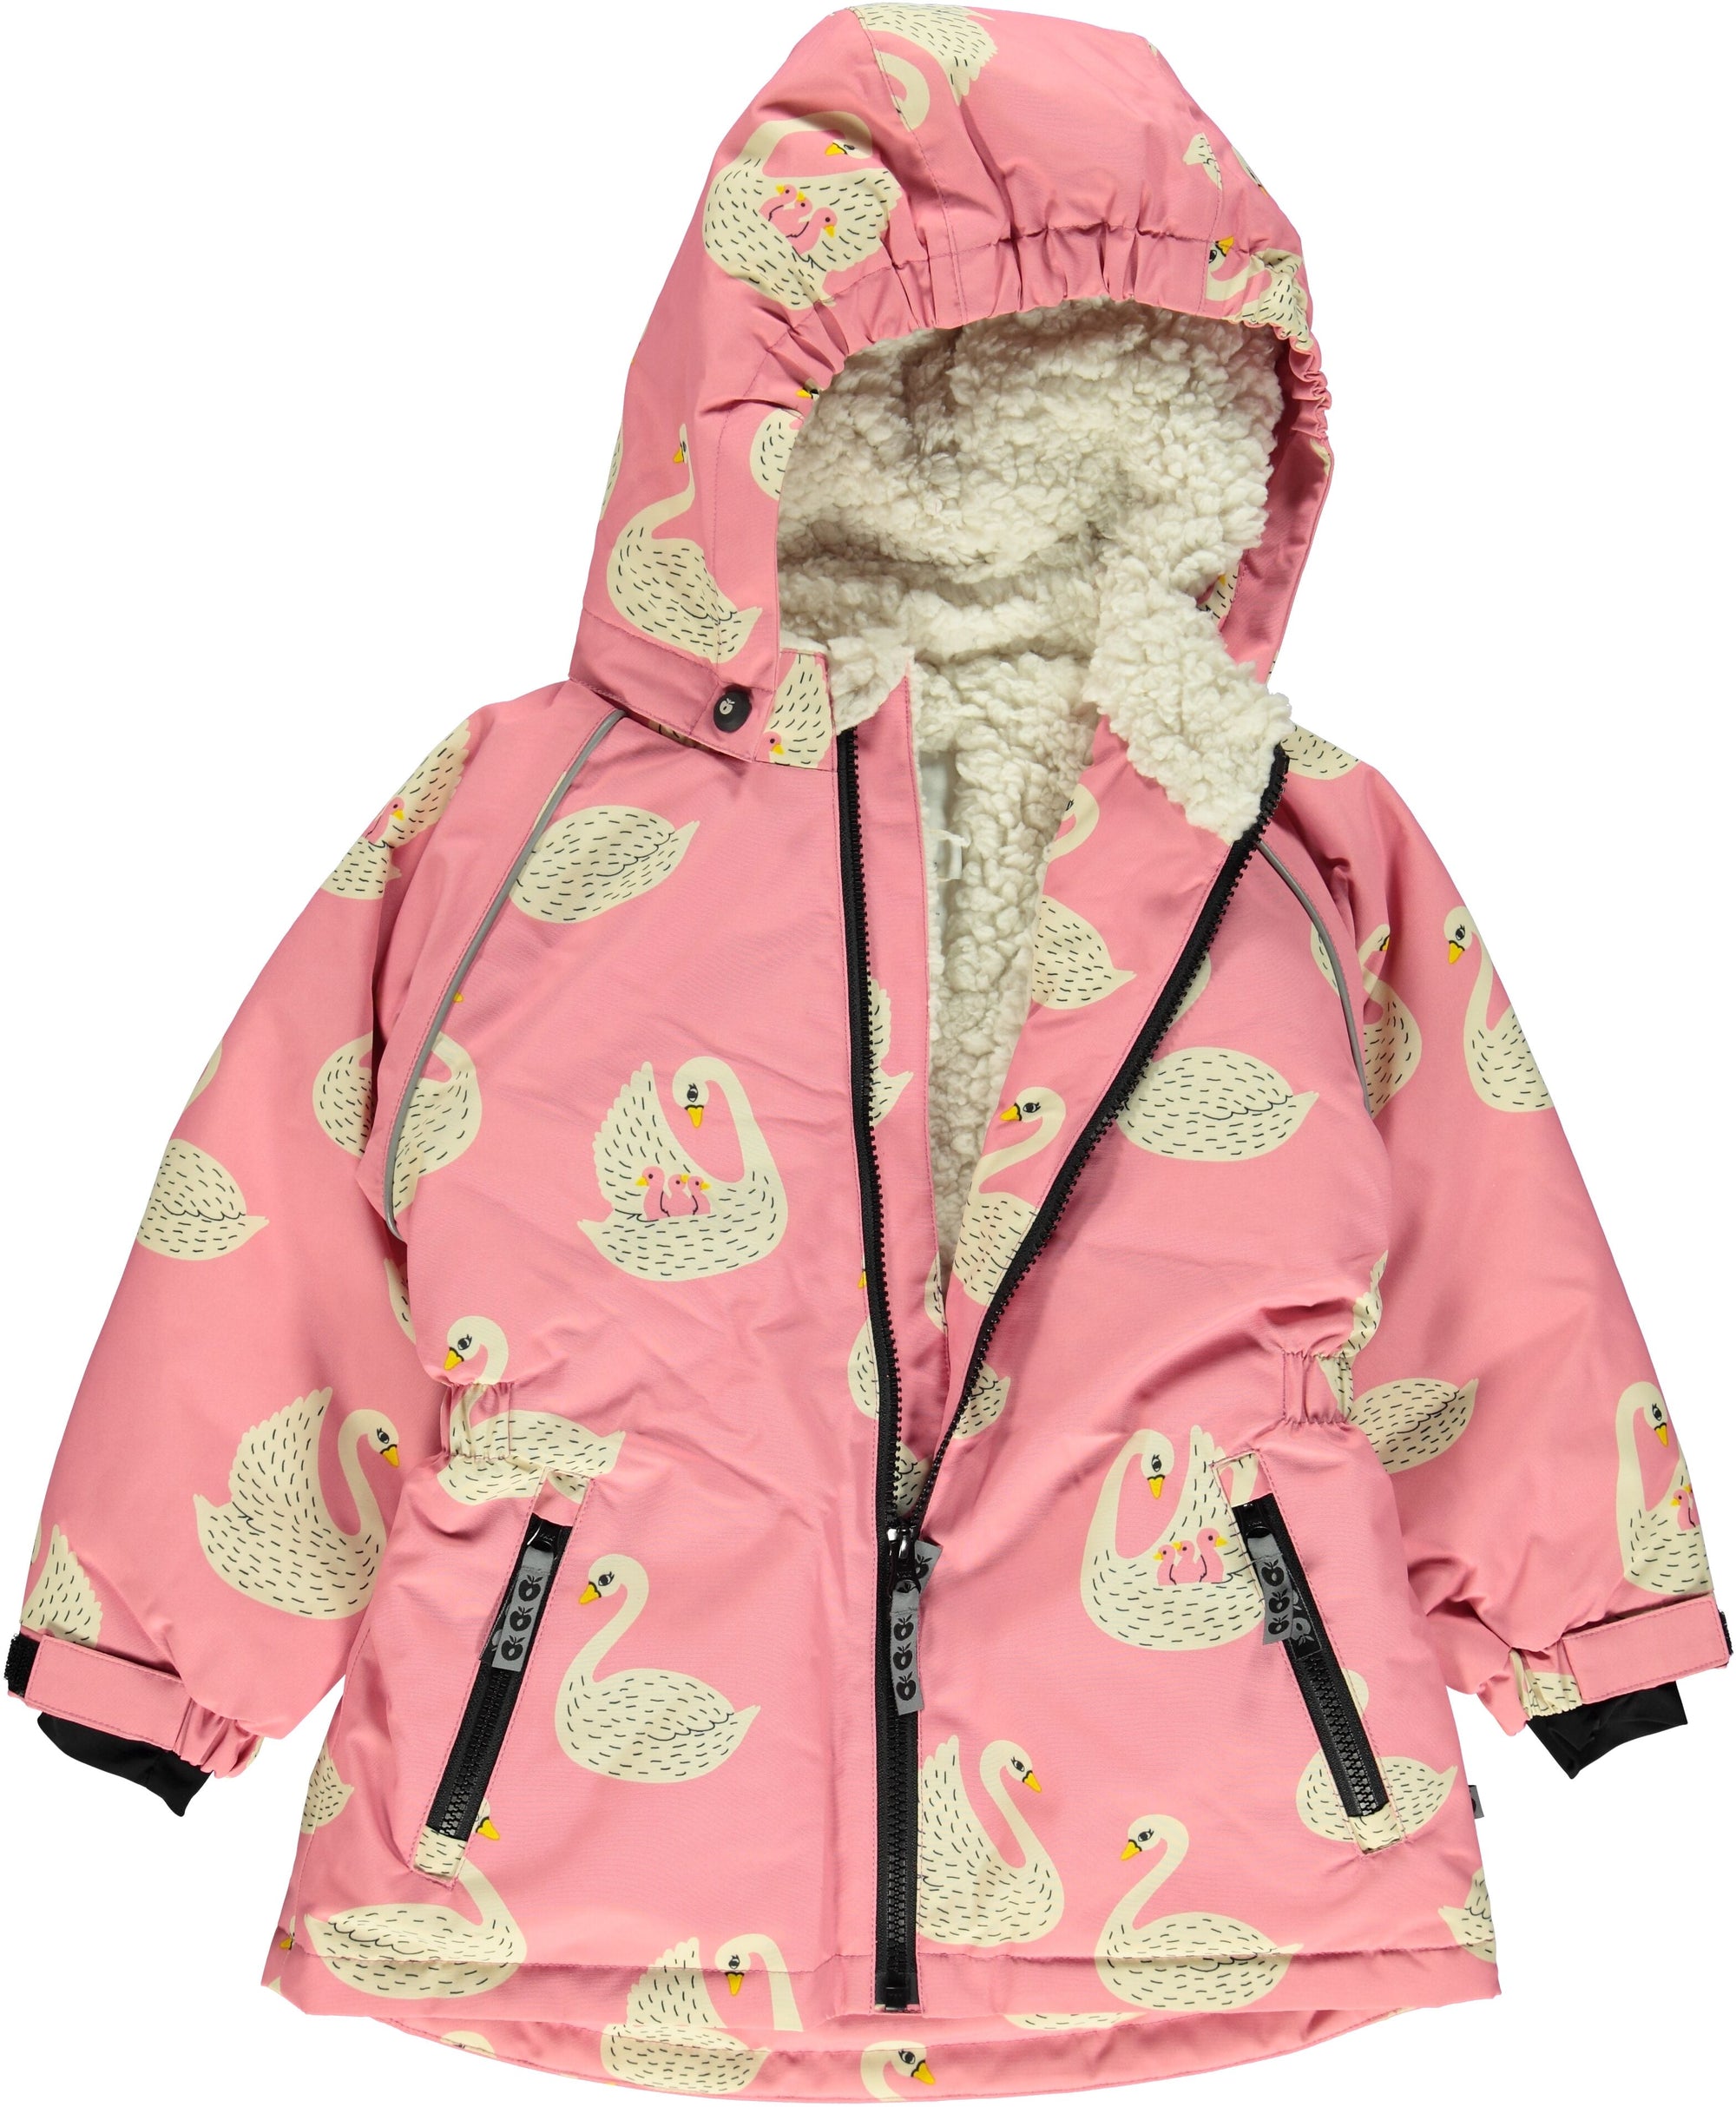 Wind rand gans Smafolk Winterjas BABY Pink Swans - Winterjacket Ijsbeer Roze Zwaan -  GOEDvanToen - Eerlijke & biologische kinderkleding en babykleding